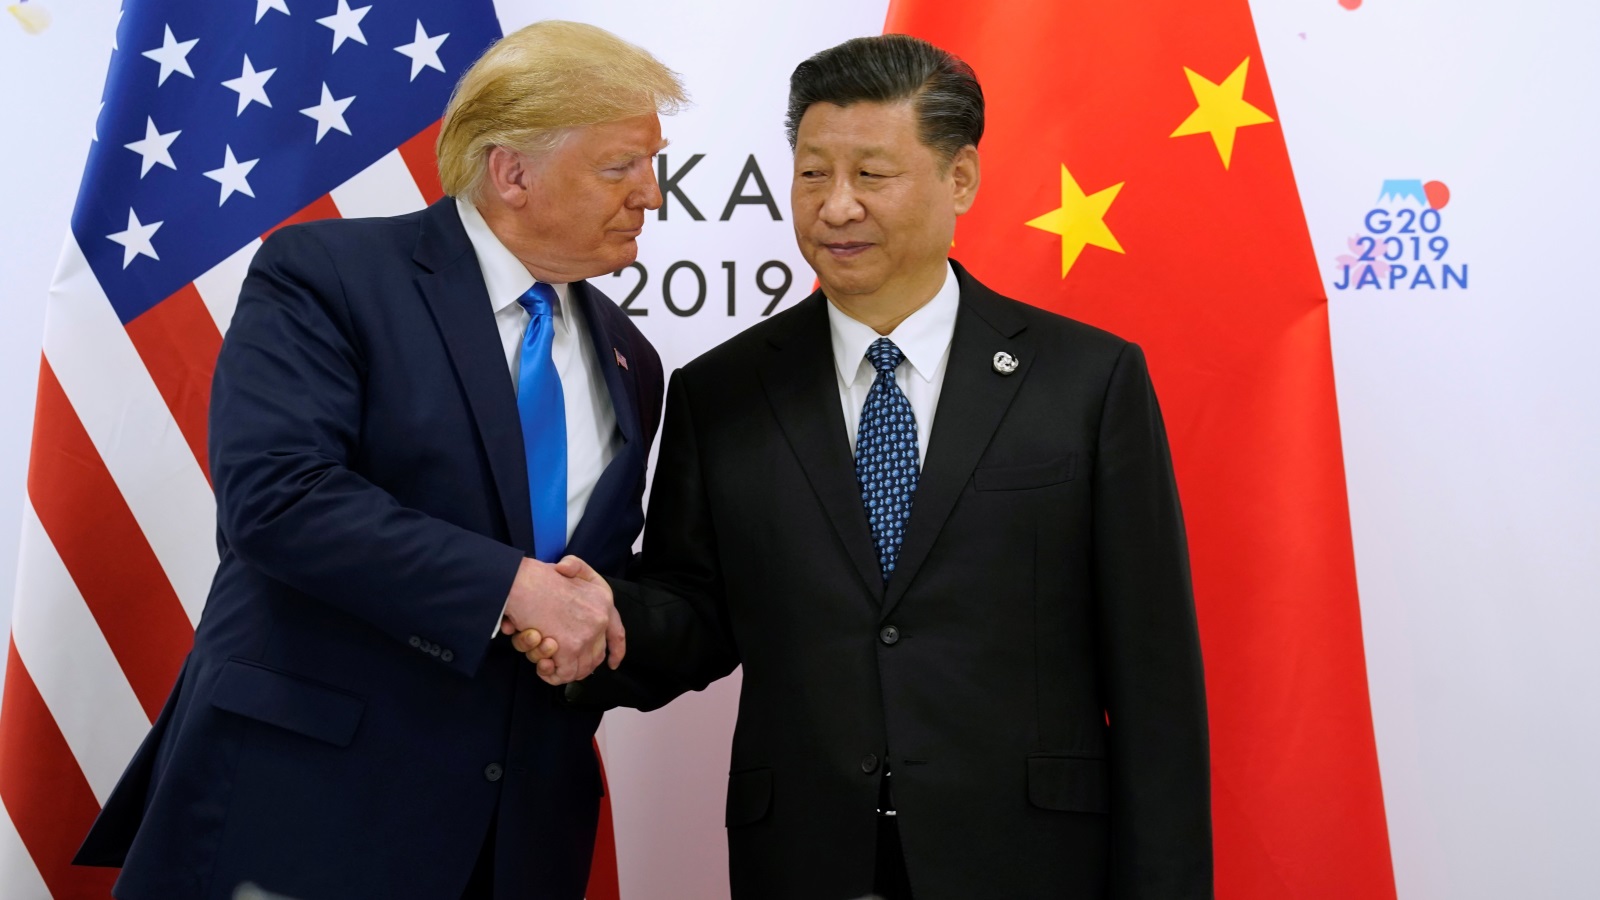 ‪خبراء يعتقدون أن الحرب التجارية التي قادها ترامب ضد الصين لم تأت بالنتائج التي توقعها الرئيس الأميركي‬ (رويترز)